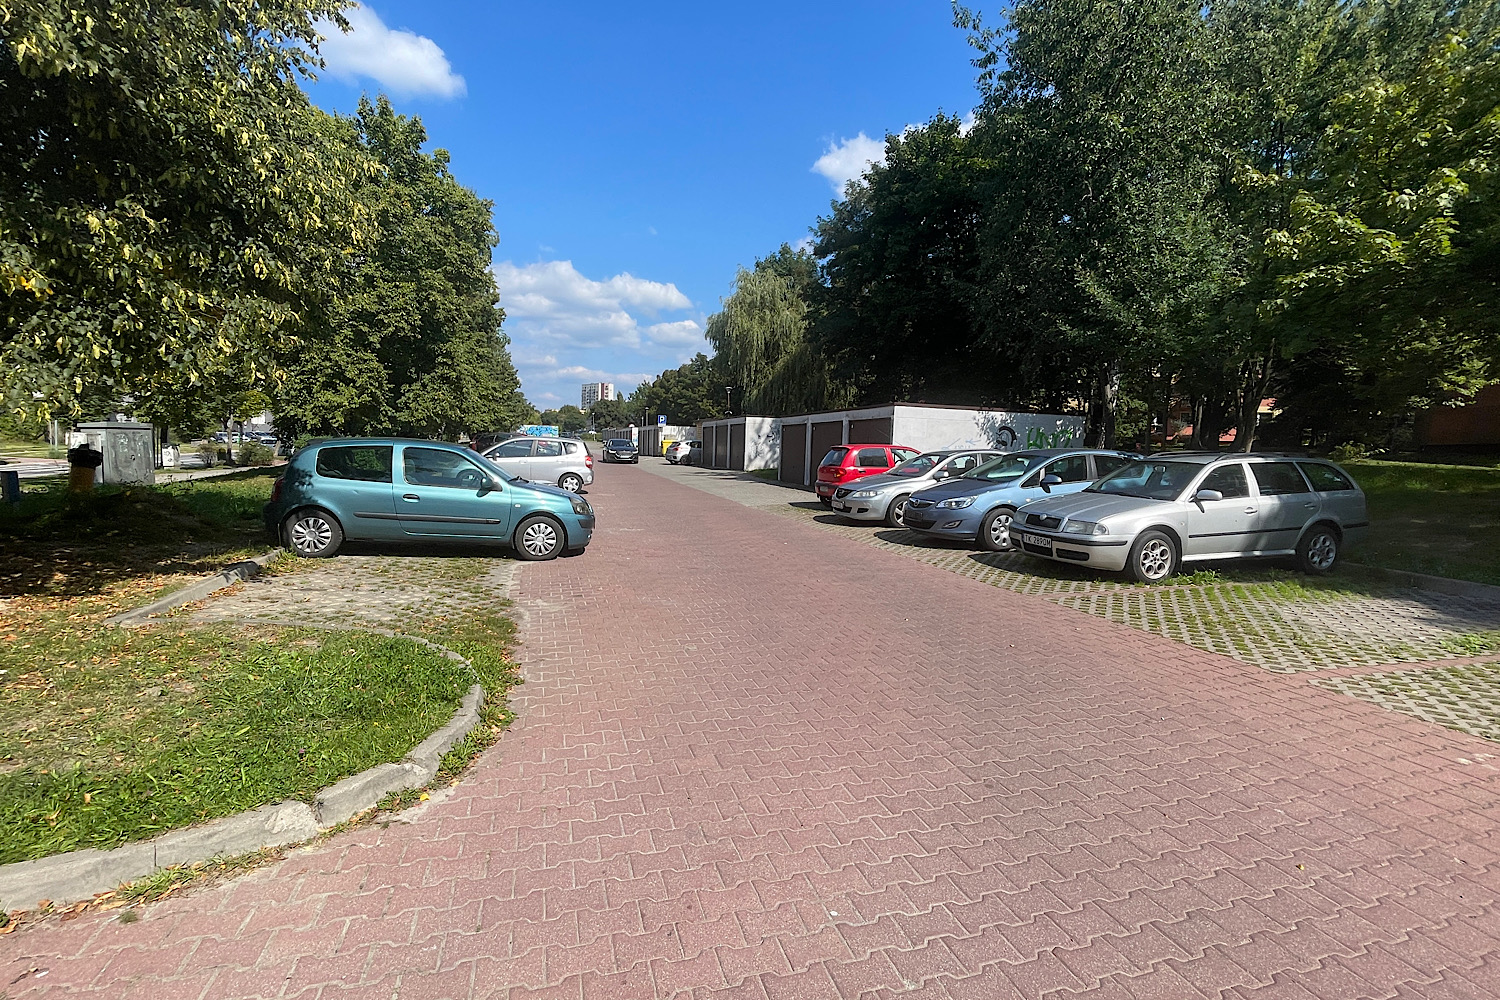 Specjalny system ograniczy parkowanie „obcych" samochodów - Radio Kielce